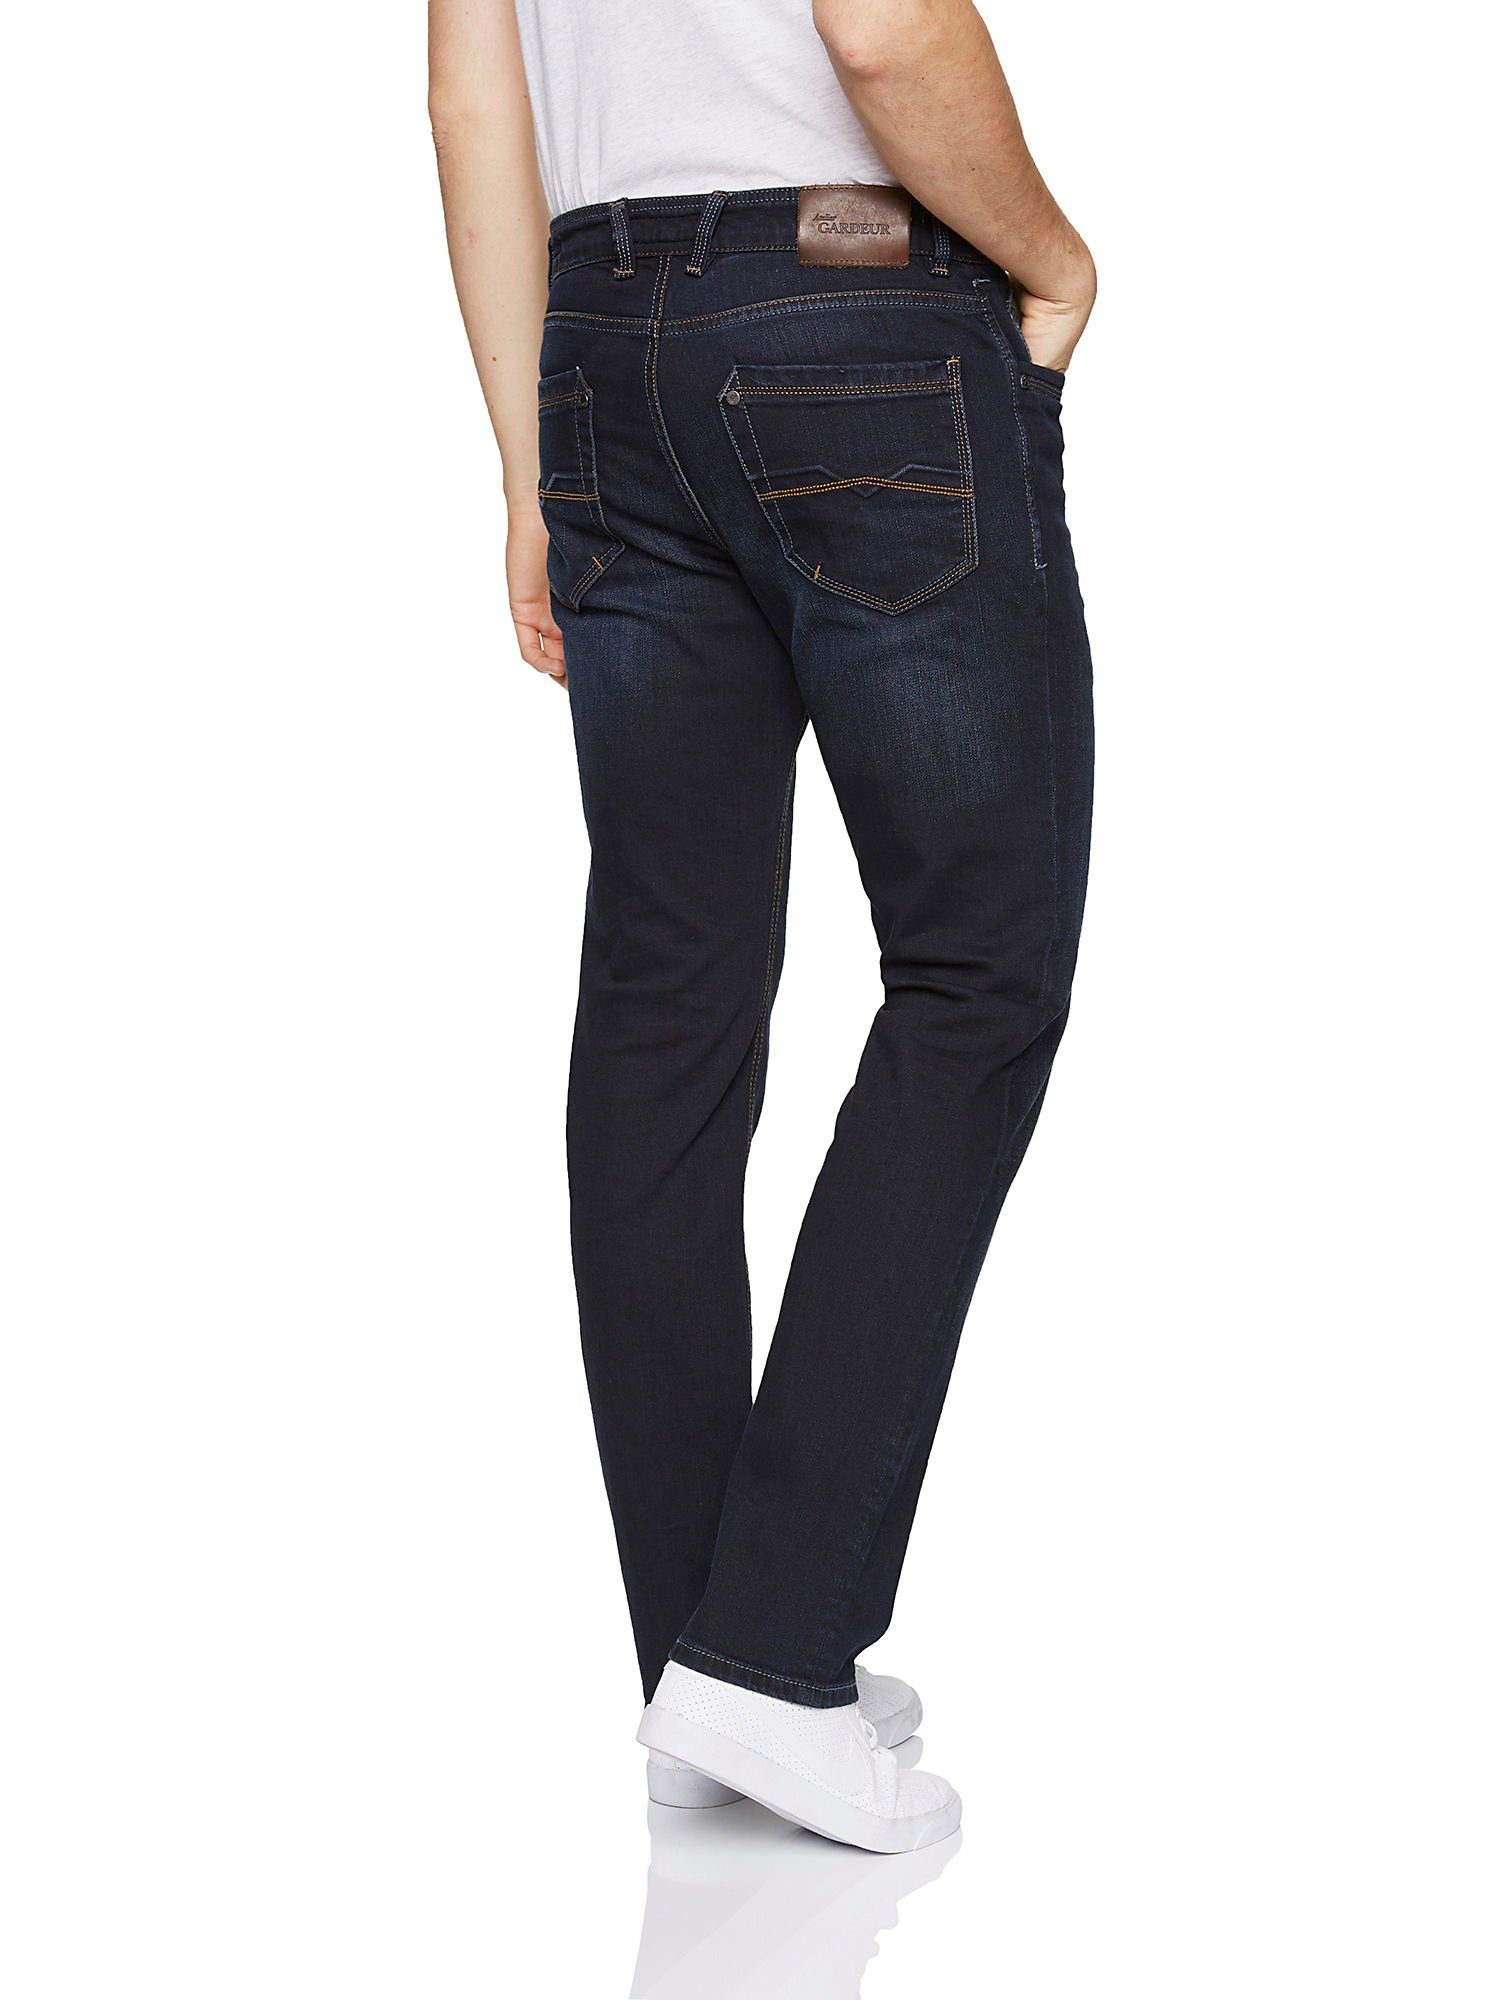 Atelier GARDEUR 5-Pocket-Jeans used GARDEUR BATU rinse ATELIER SUPERFLEX blue light dark - 0-71001-169